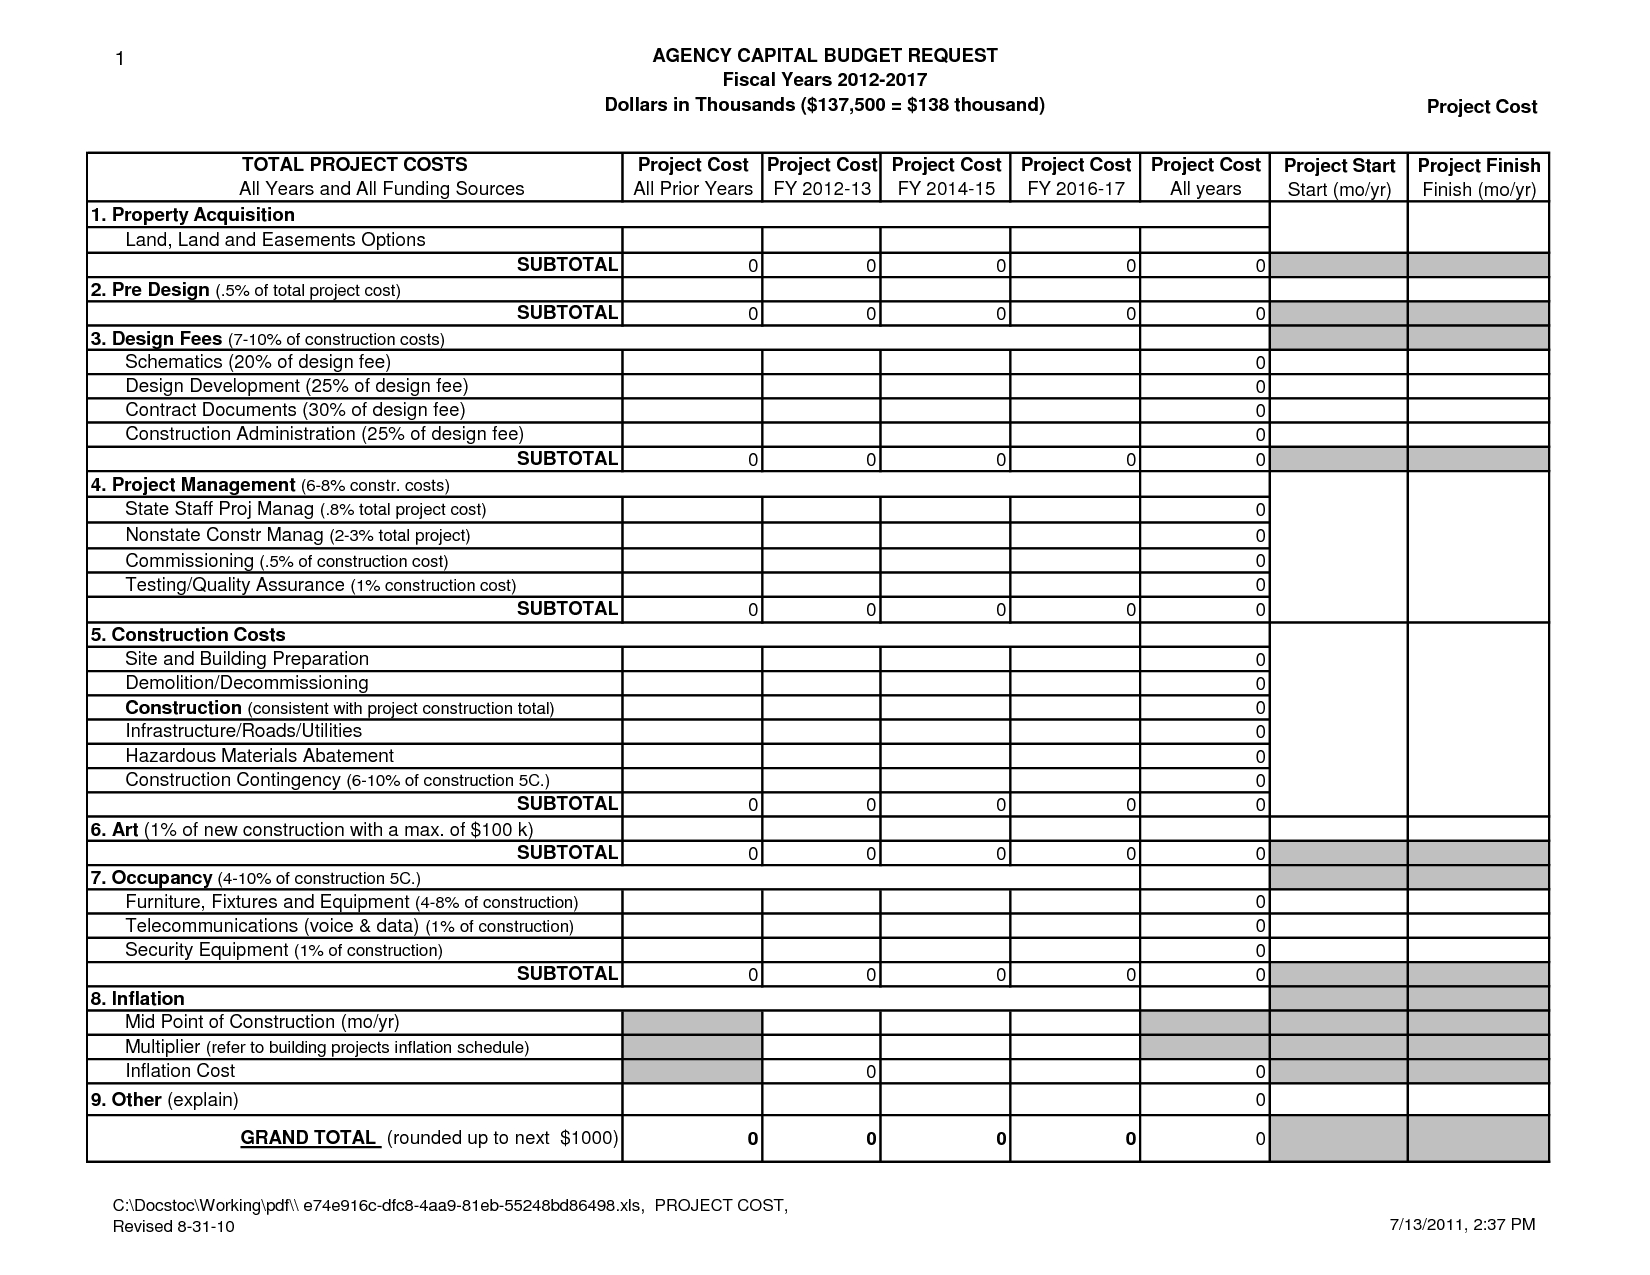 Kitchen Remodel Excel Spreadsheet In Remodeling Estimate Template Sample Worksheets Kitchen Basement